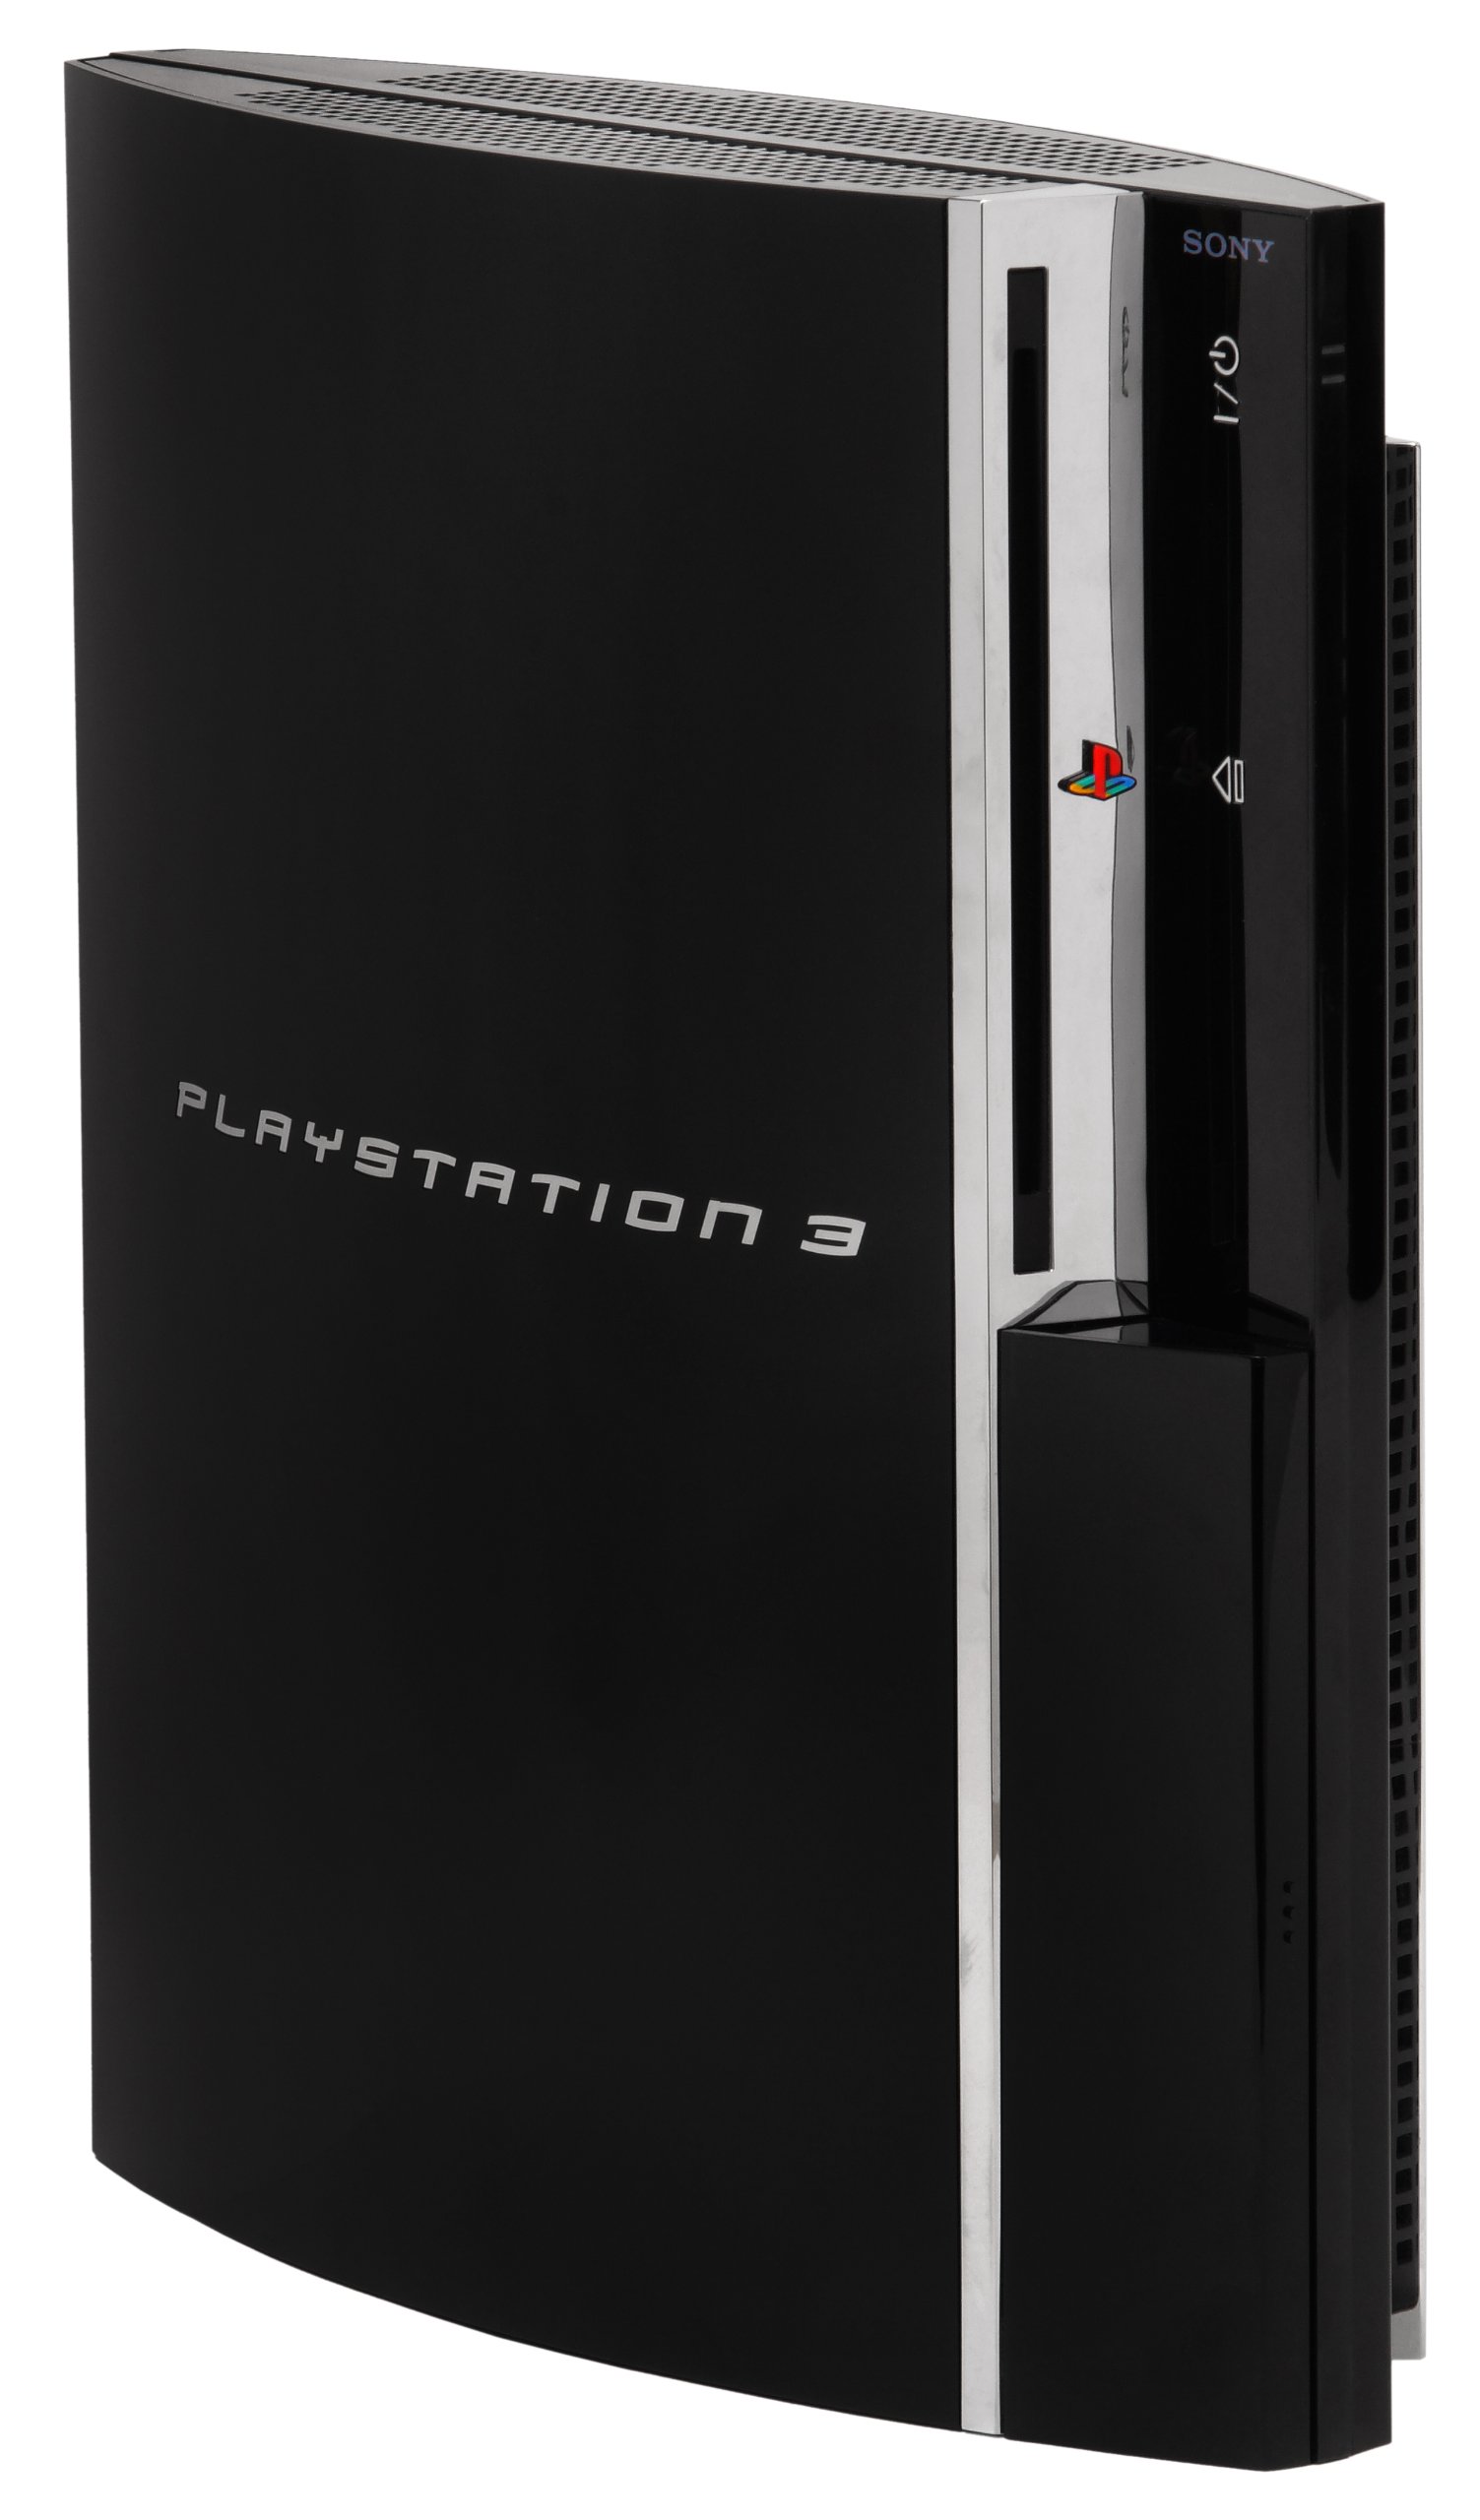 Sony PlayStation 3 - 60GB System (Renewed)